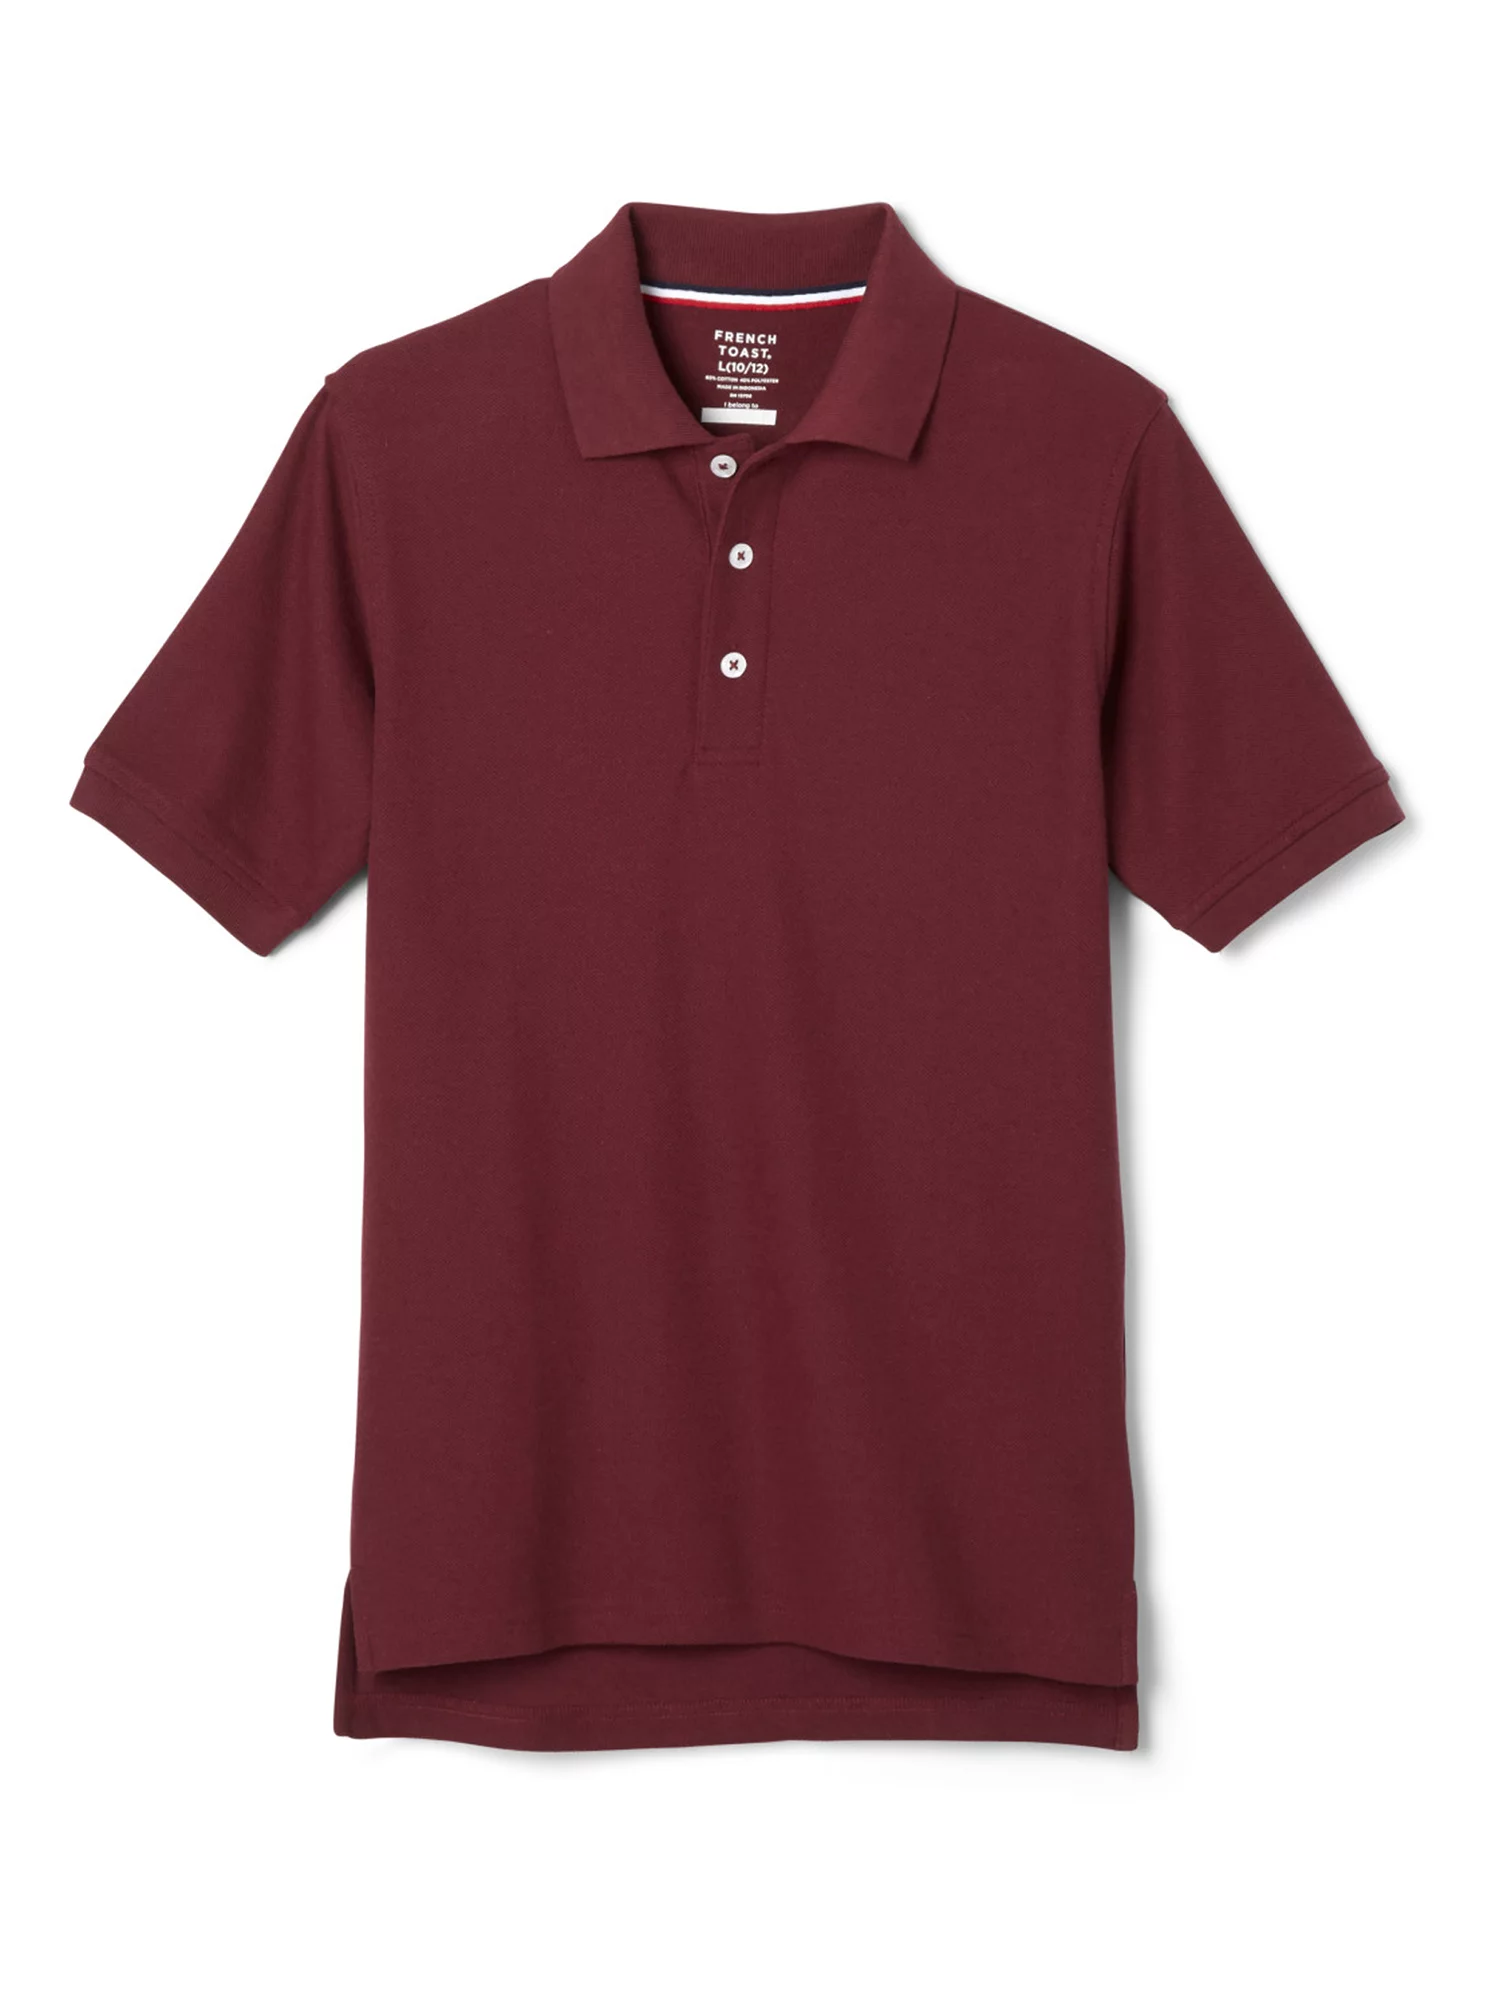 Boys School Uniform Short Sleeve Pique Polo Shirt